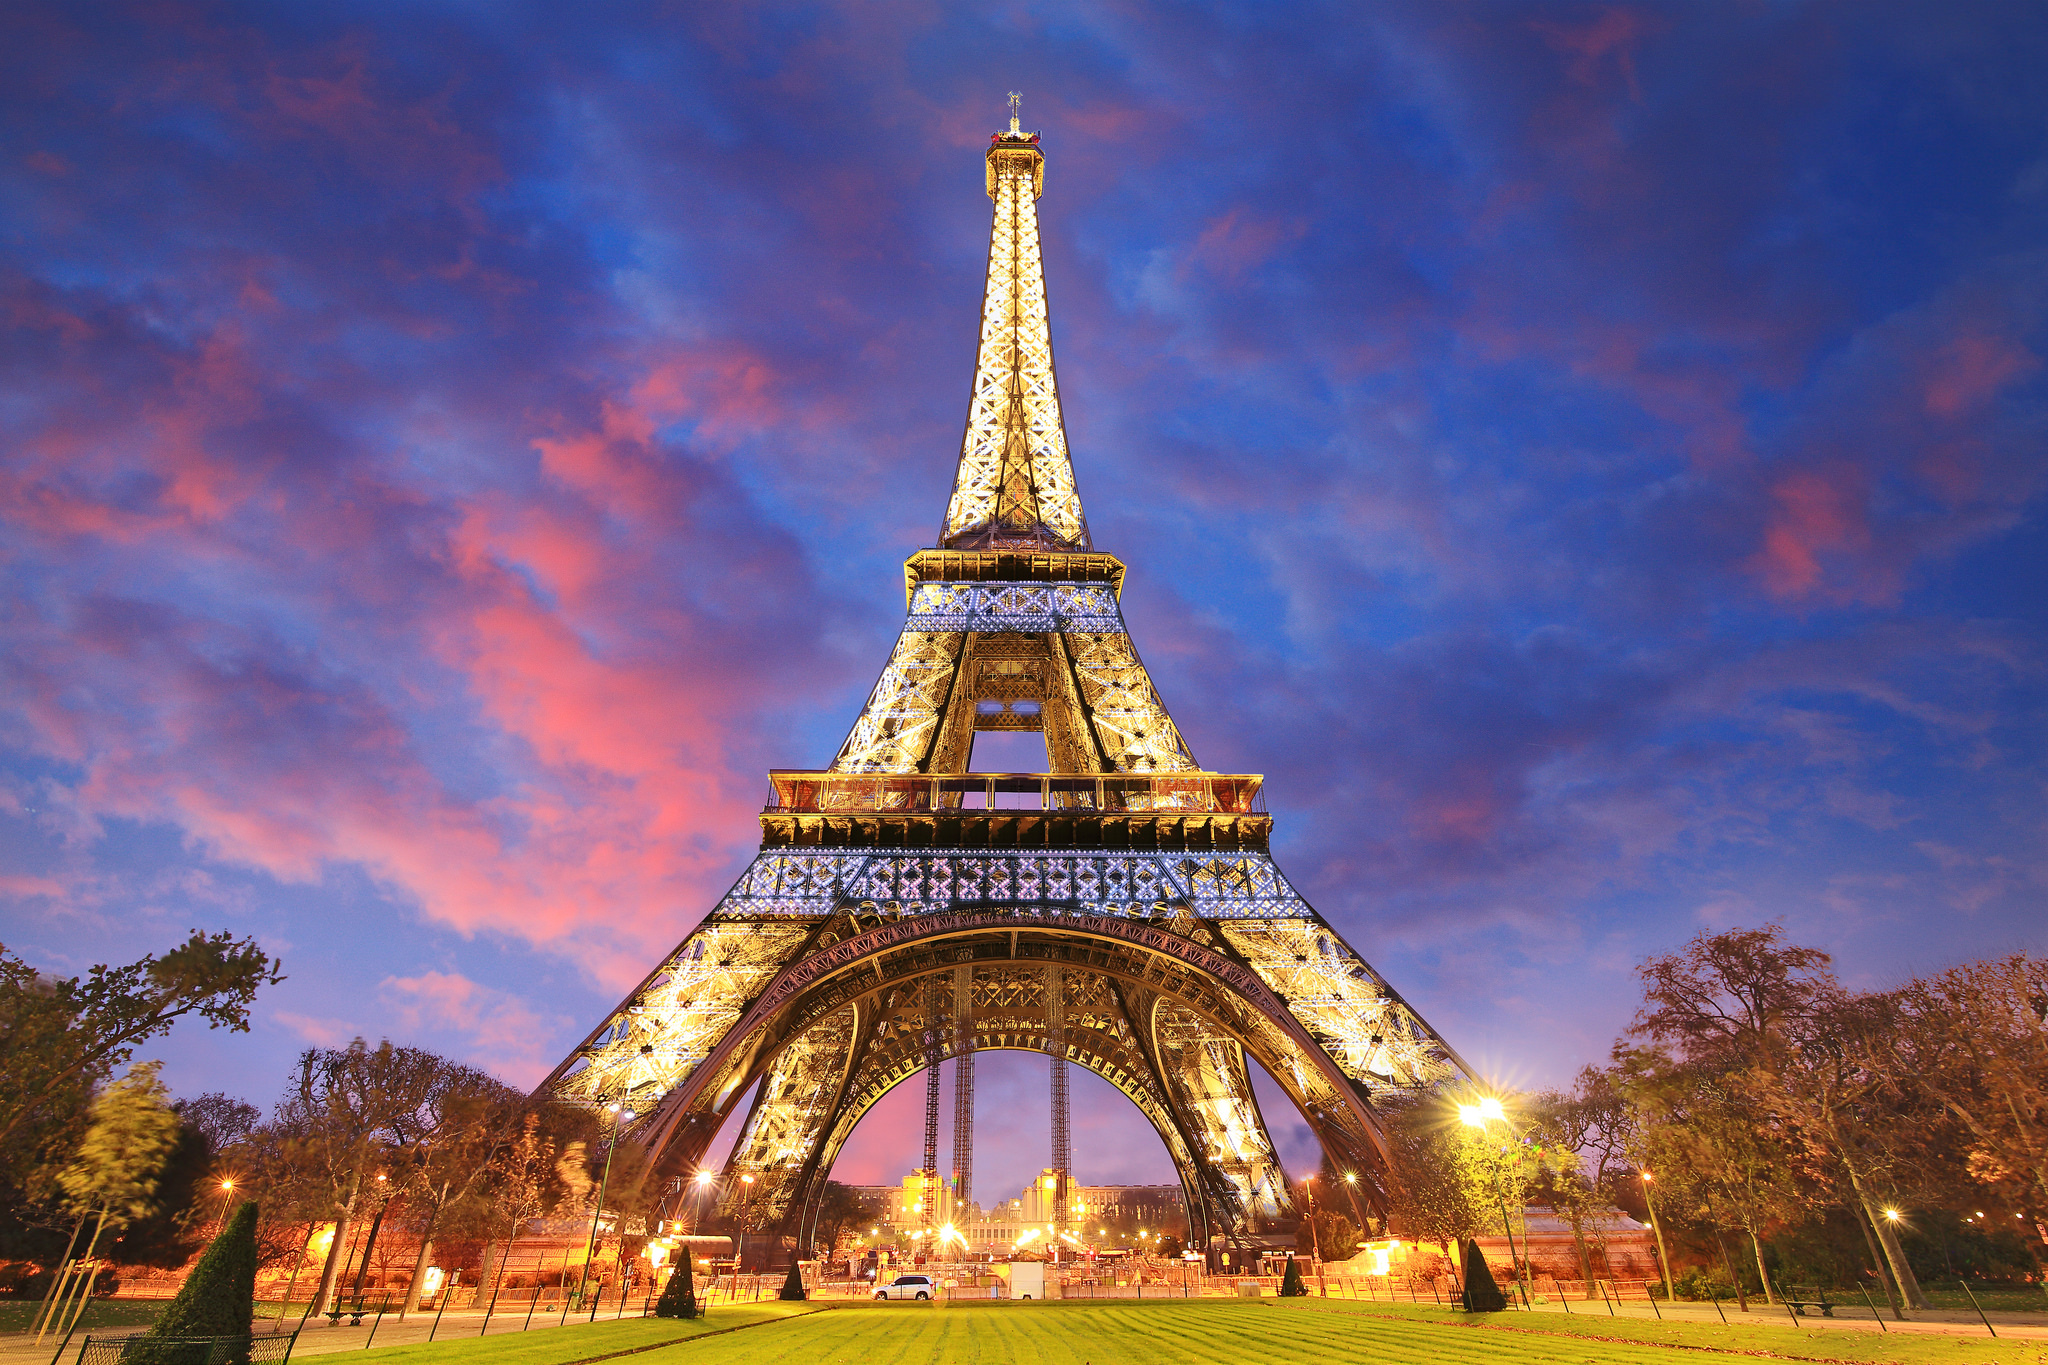 Tổng Hợp 50+ Hình Ảnh Tháp Eiffel Đẹp, Lộng Lấy, Hùng Vĩ Nhất 32